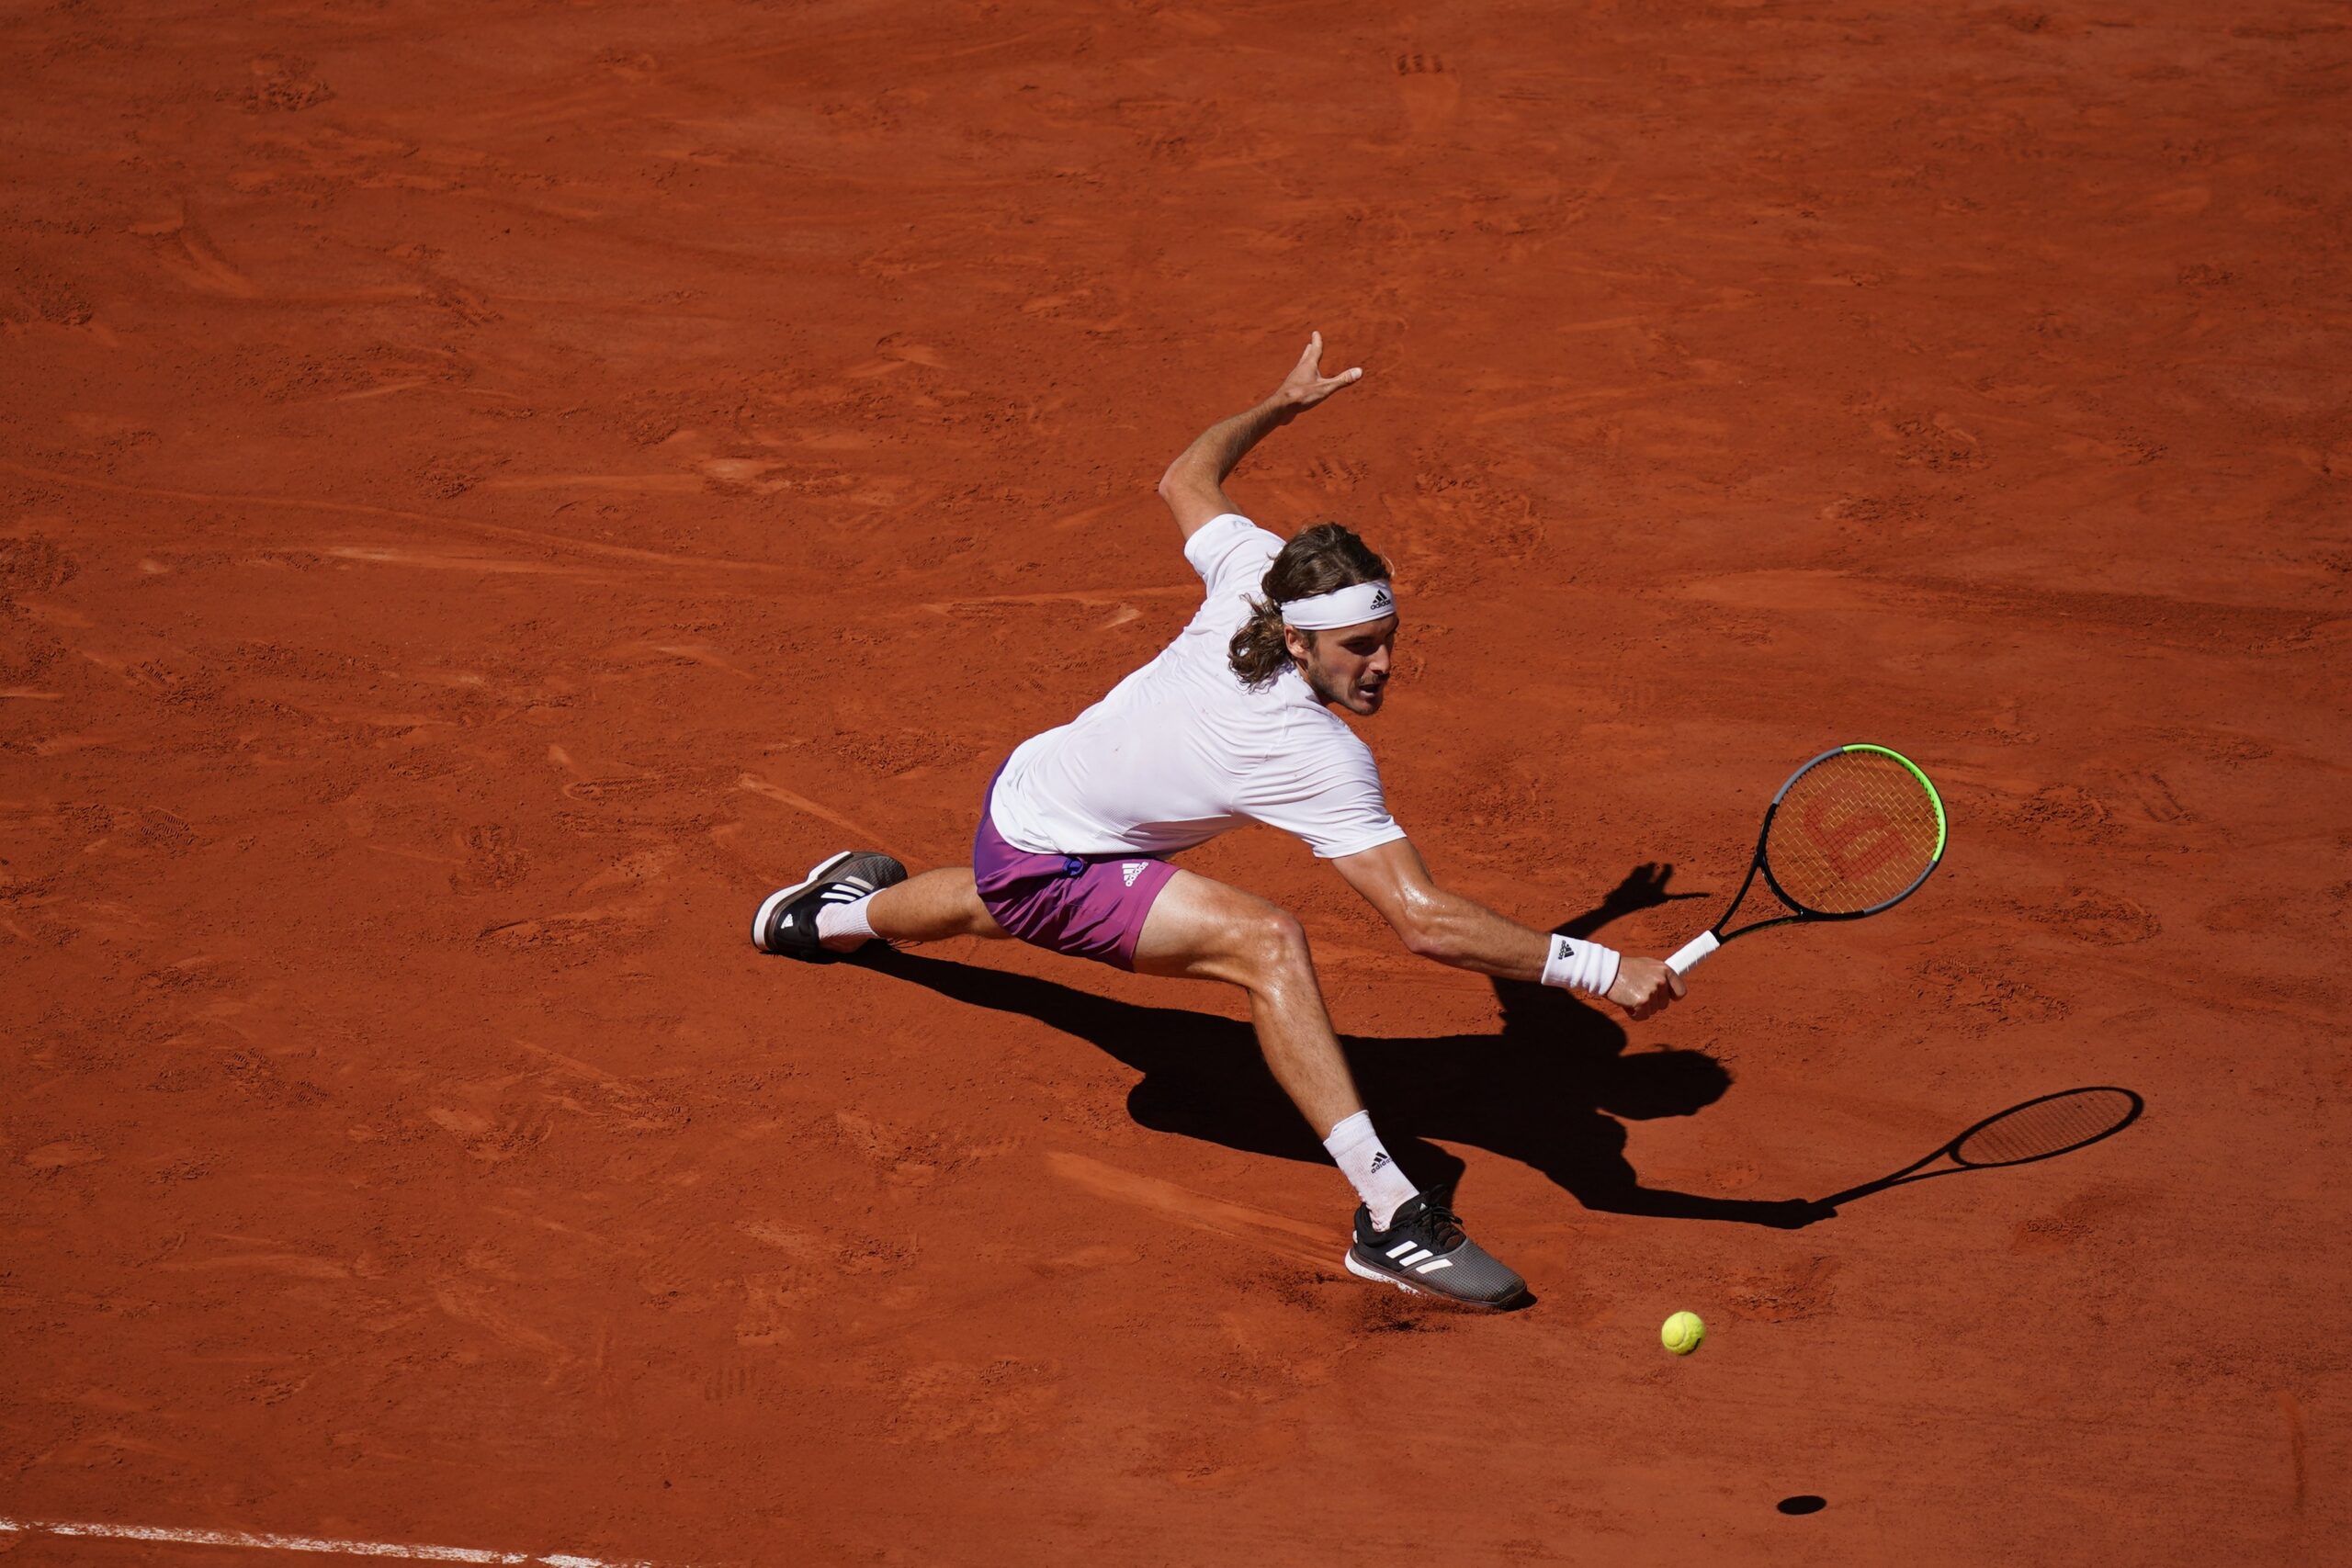 Τζόκοβιτς – Τσιτσιπάς 3-2 σετ: Τα highlights του επικού τελικού του Roland Garros (vids)